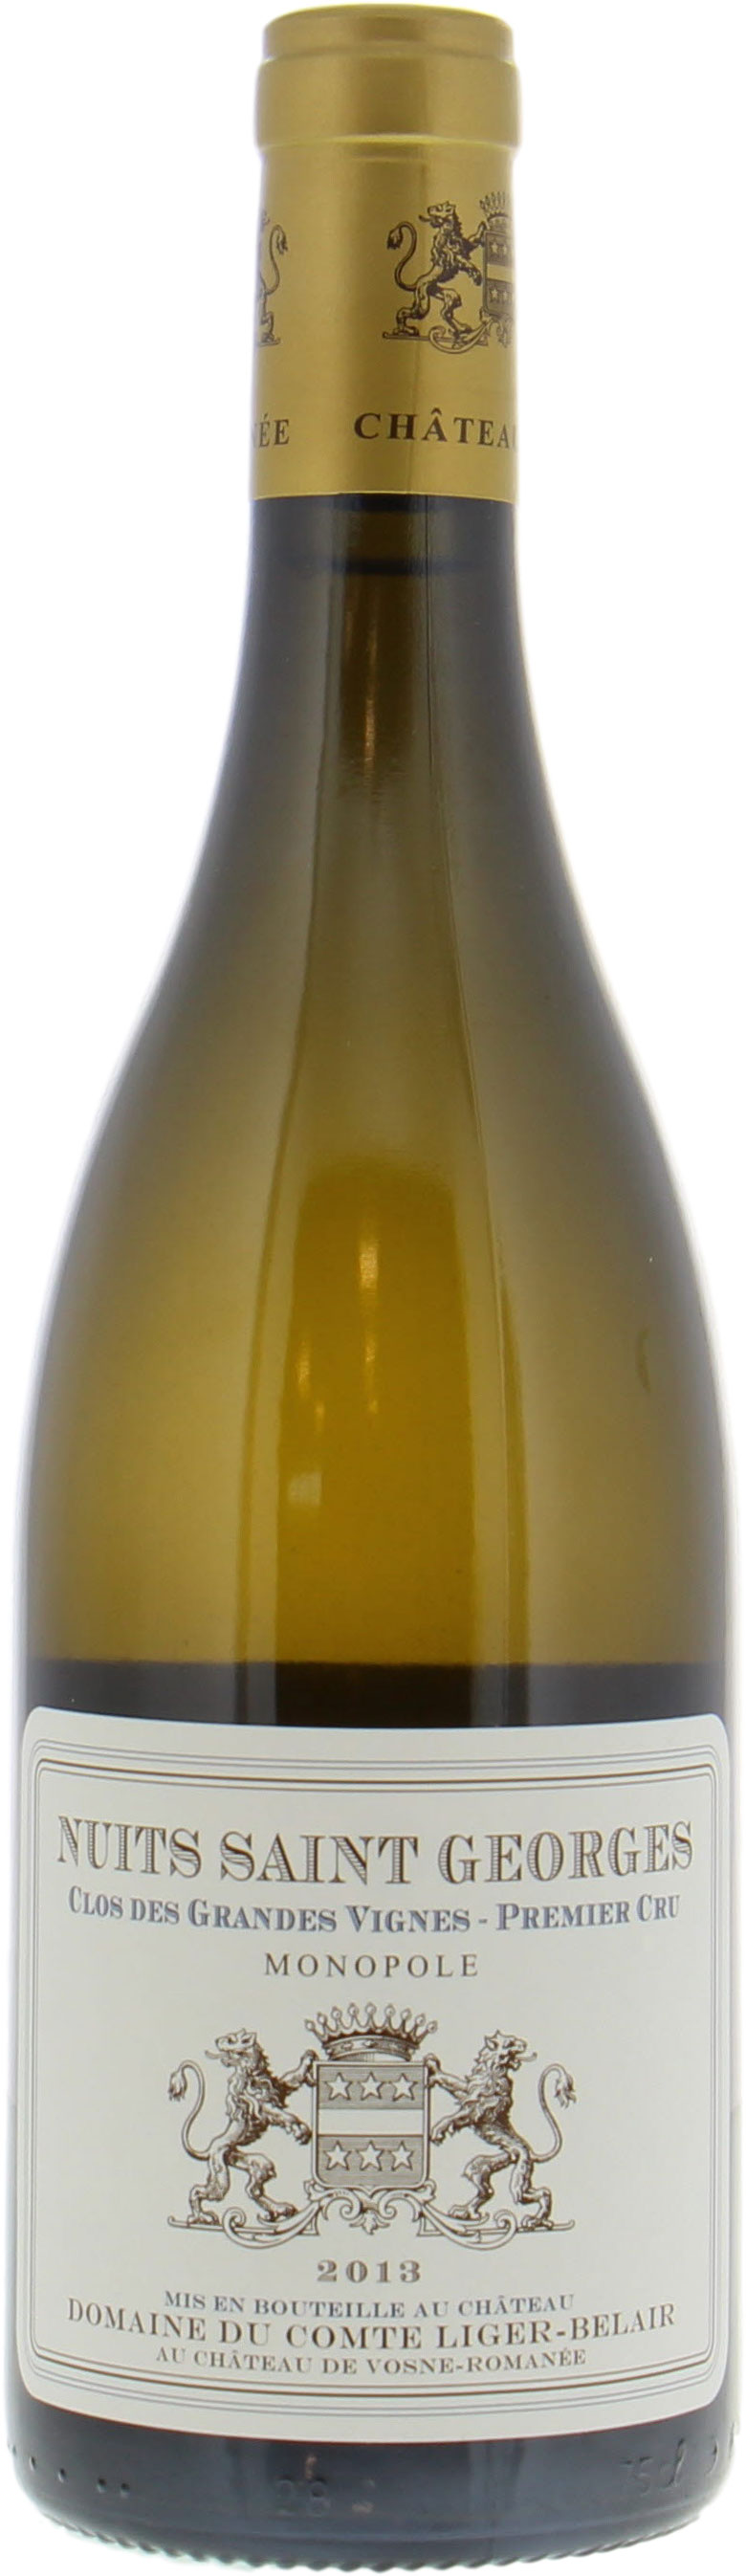 Domaine du Comte Liger-Belair - Nuits St Georges Clos Grandes Vignes Blanc 2013 Perfect